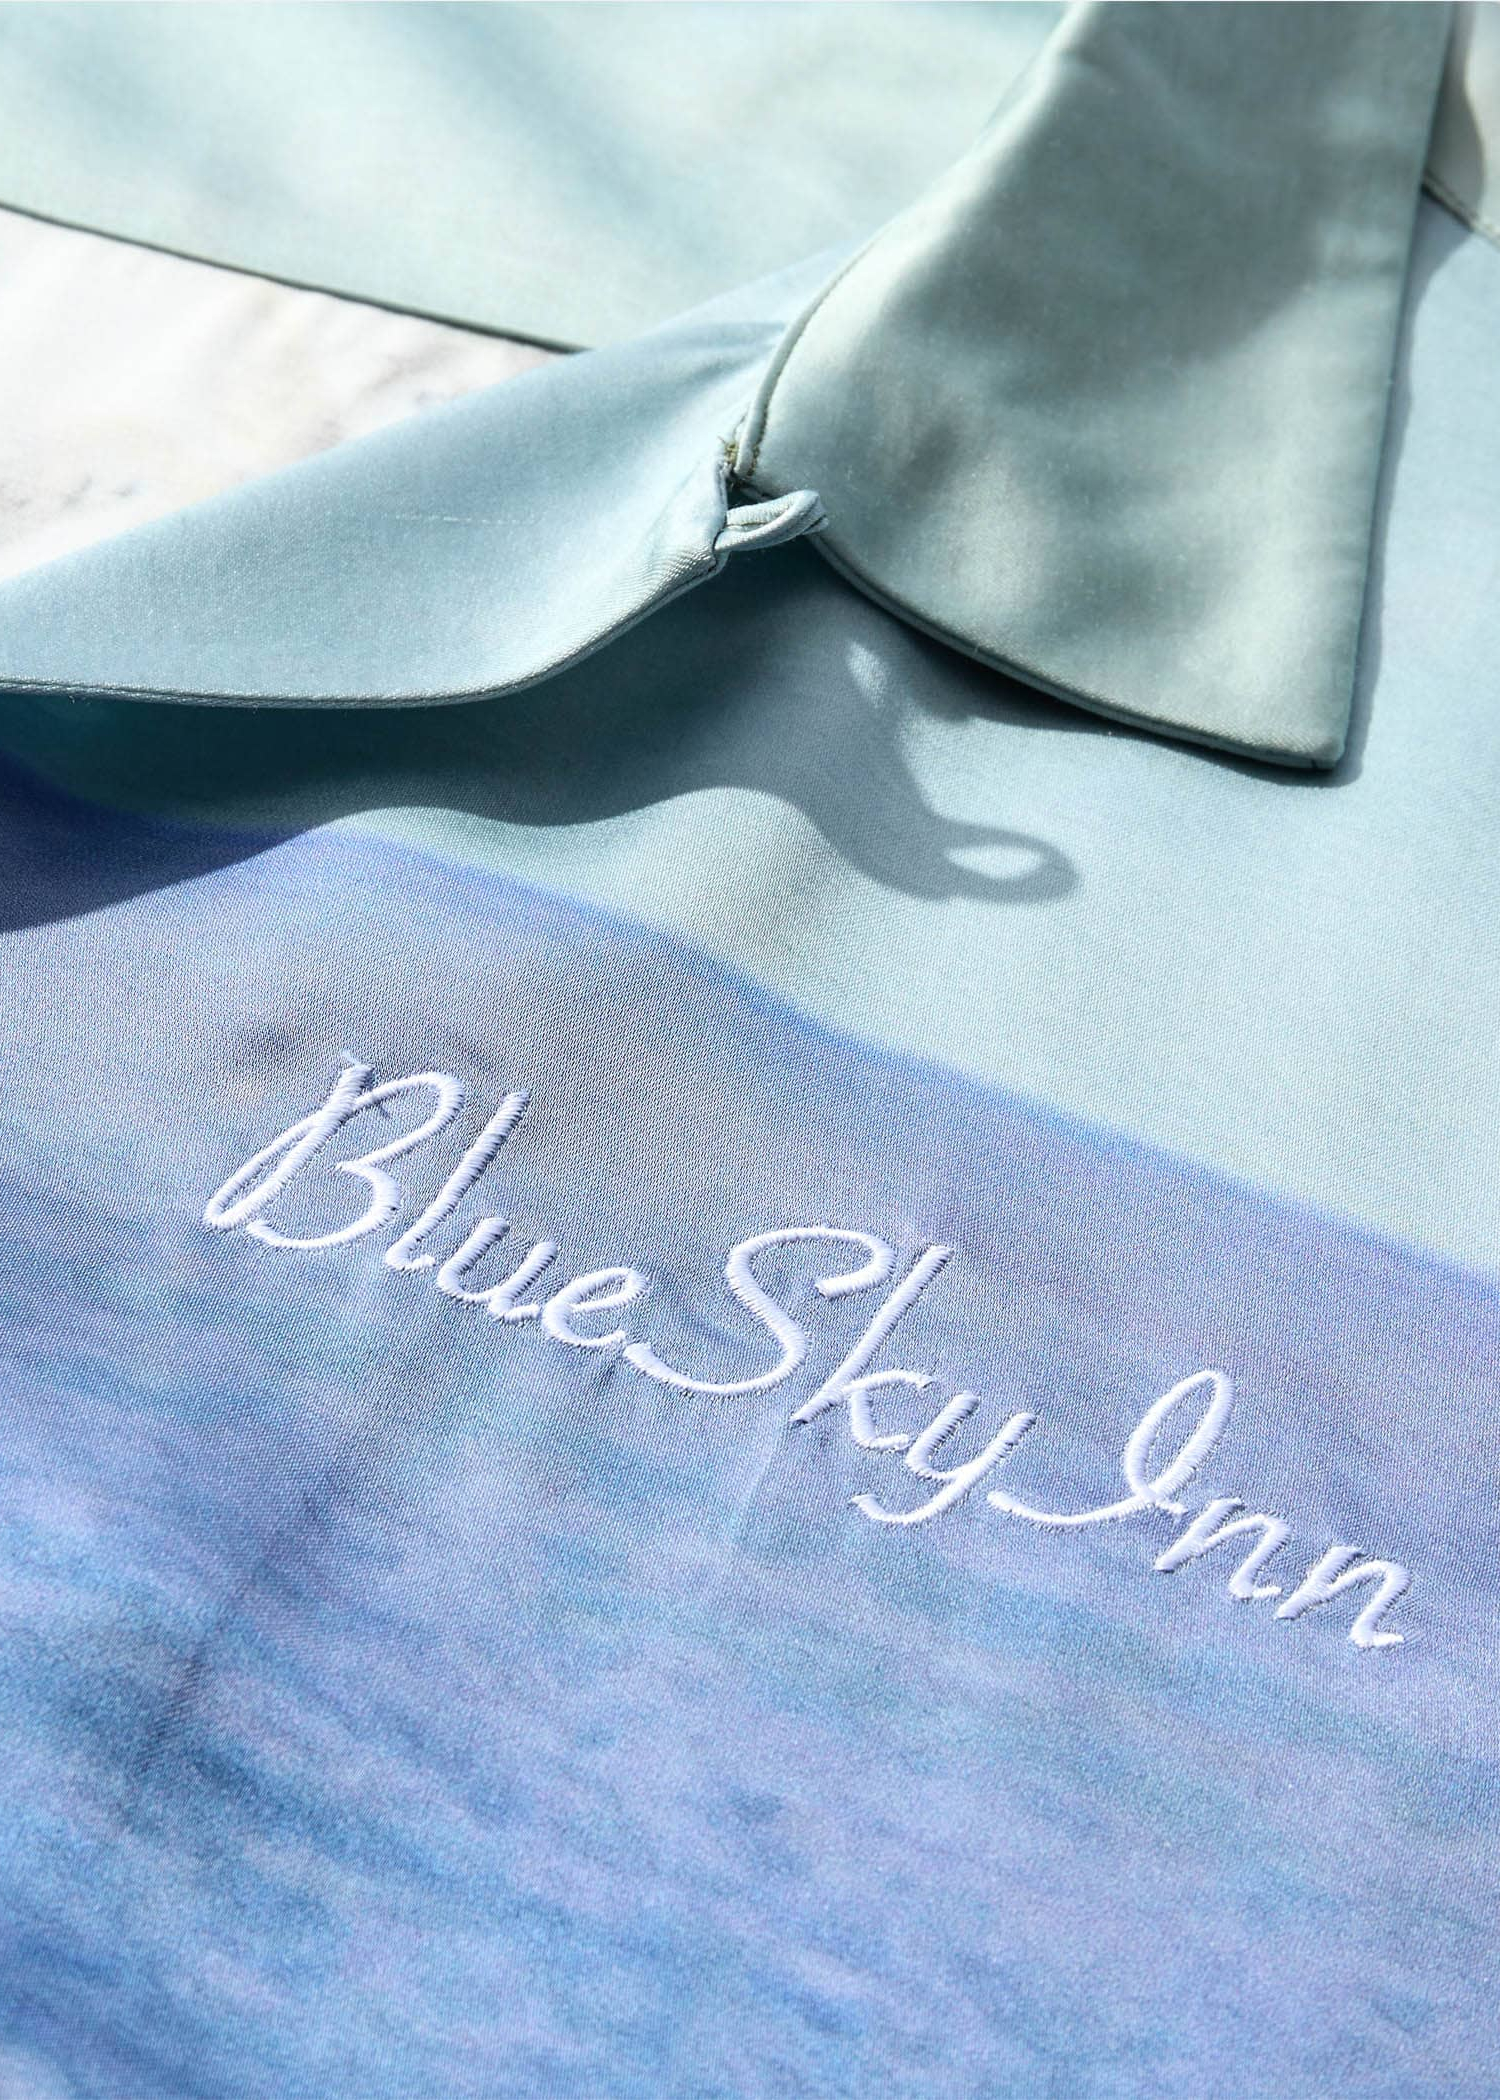 Blue Sky Inn Banzai Pipeline Shirt